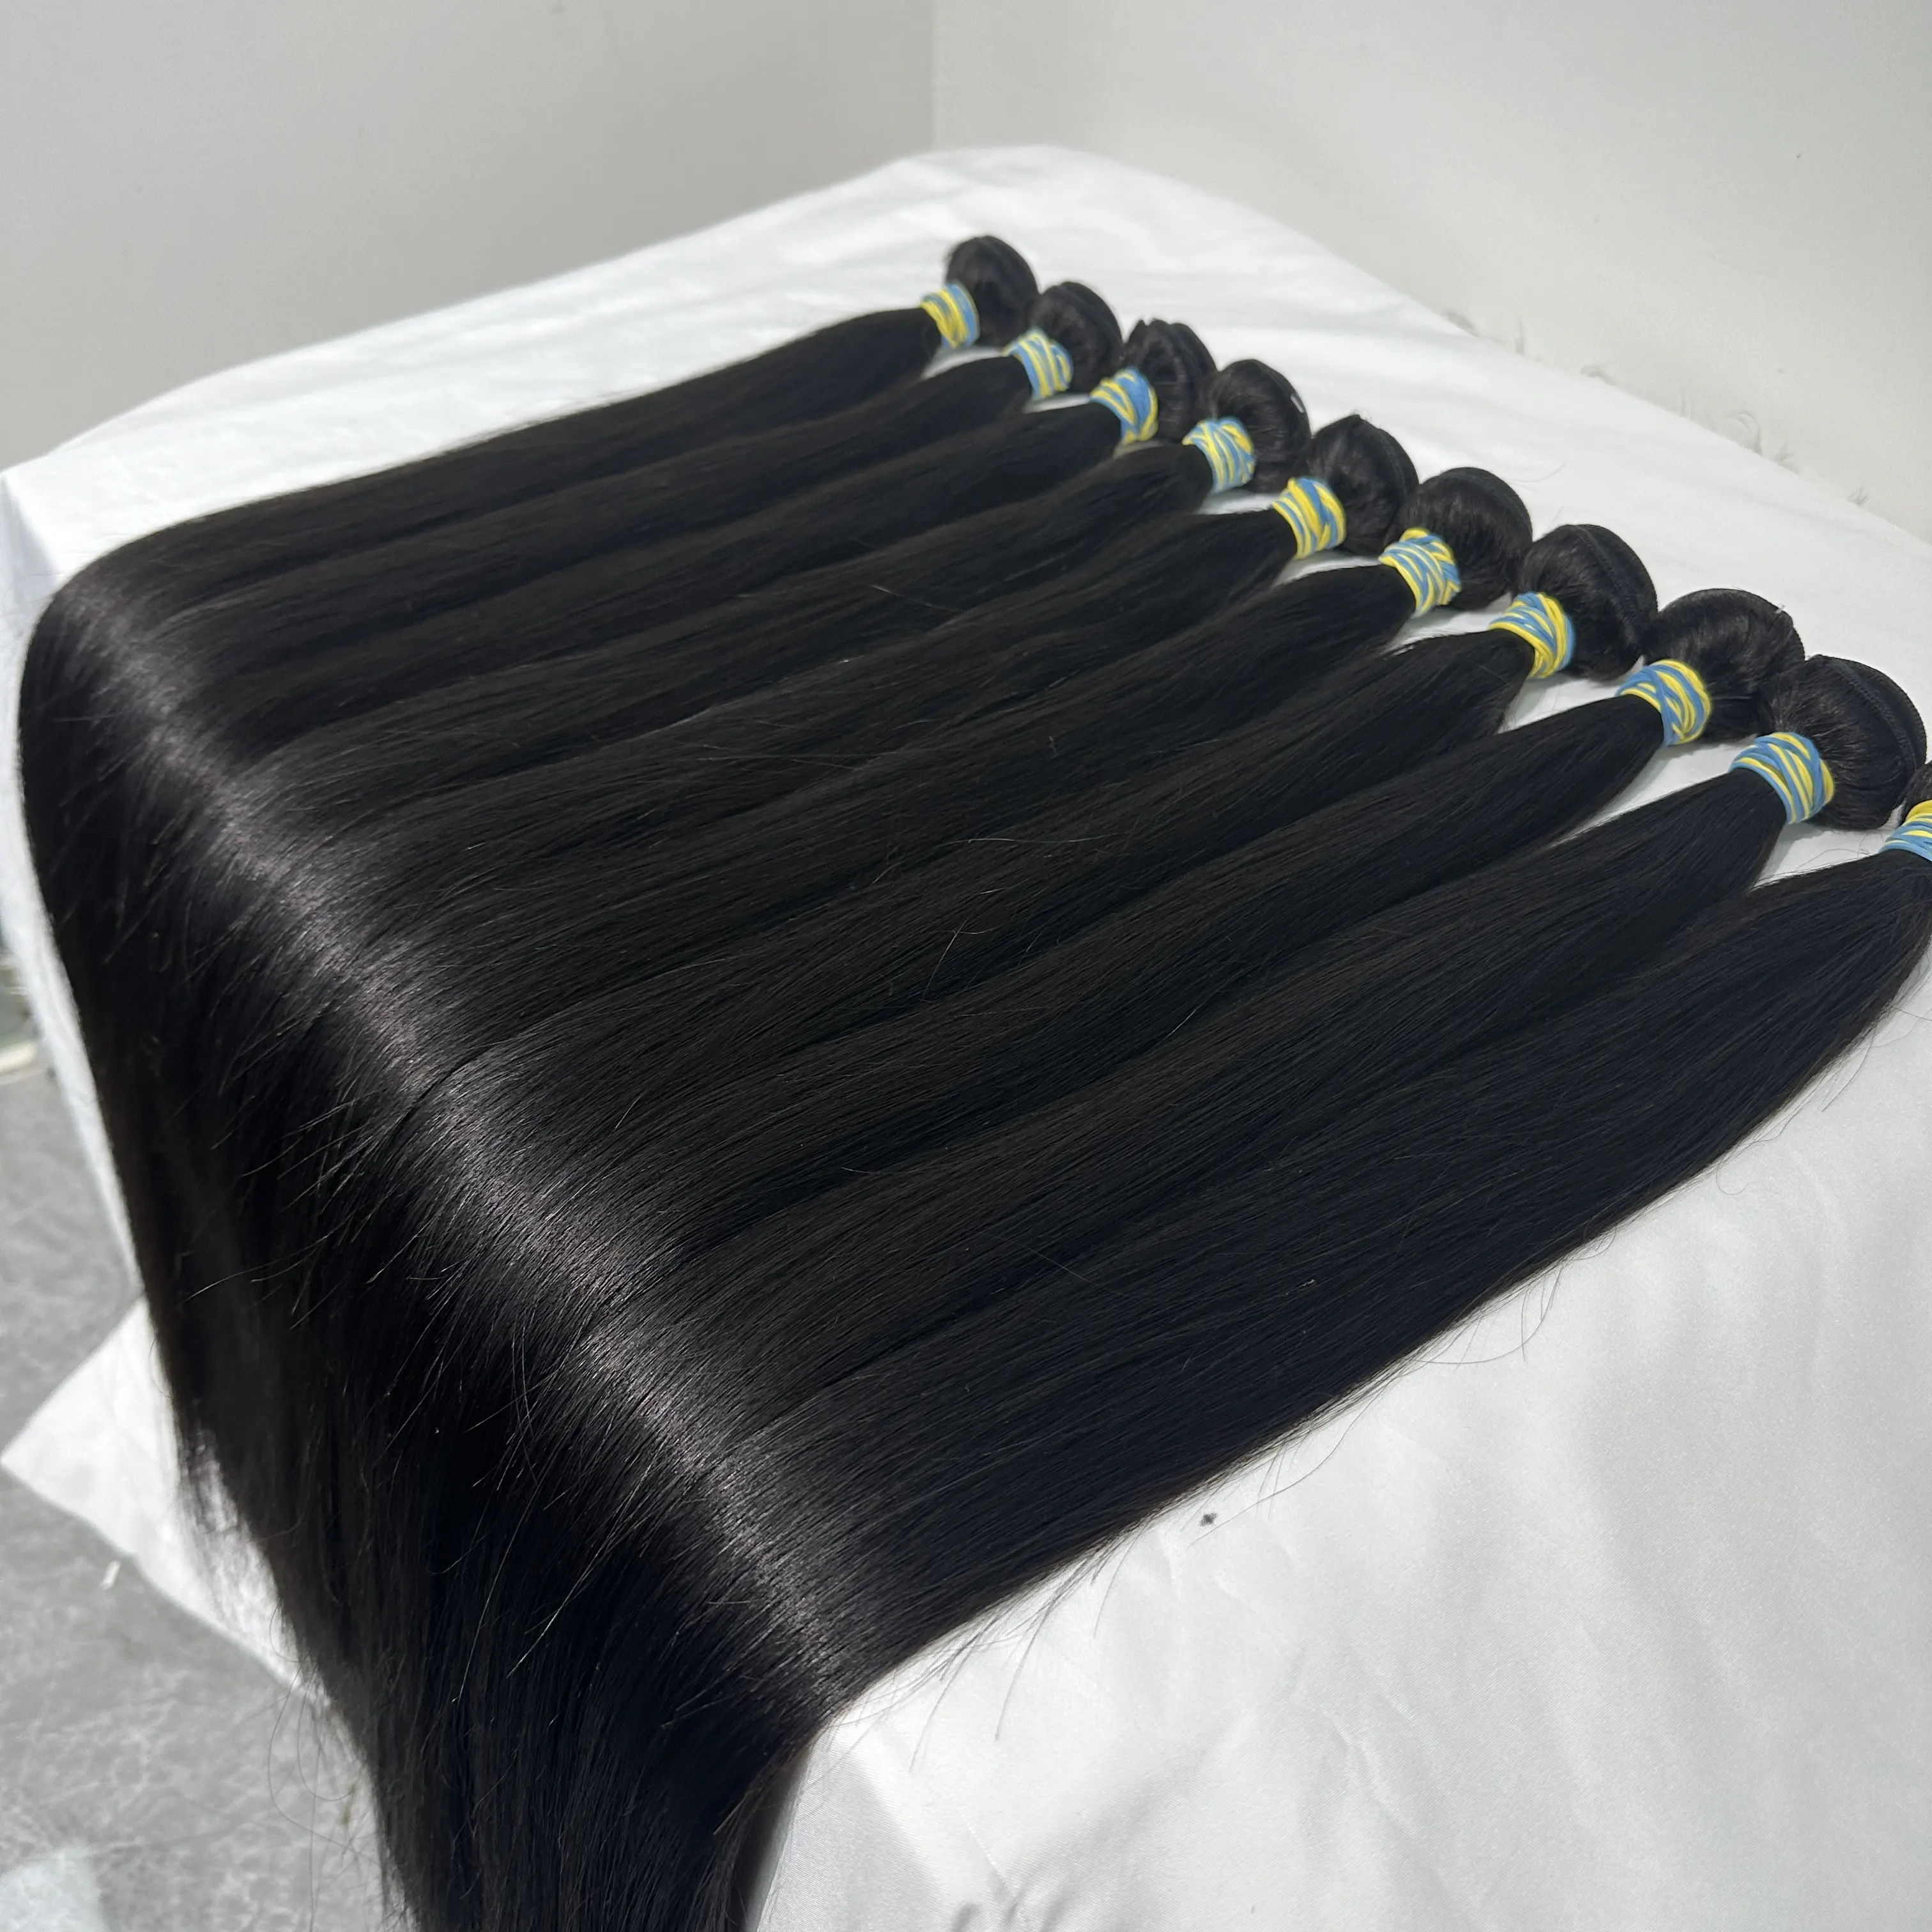 Paquete de pelo brasileño virgen original con muestra gratis al por mayor, paquete de pelo de visón crudo, pelo humano 100% para mujeres negras